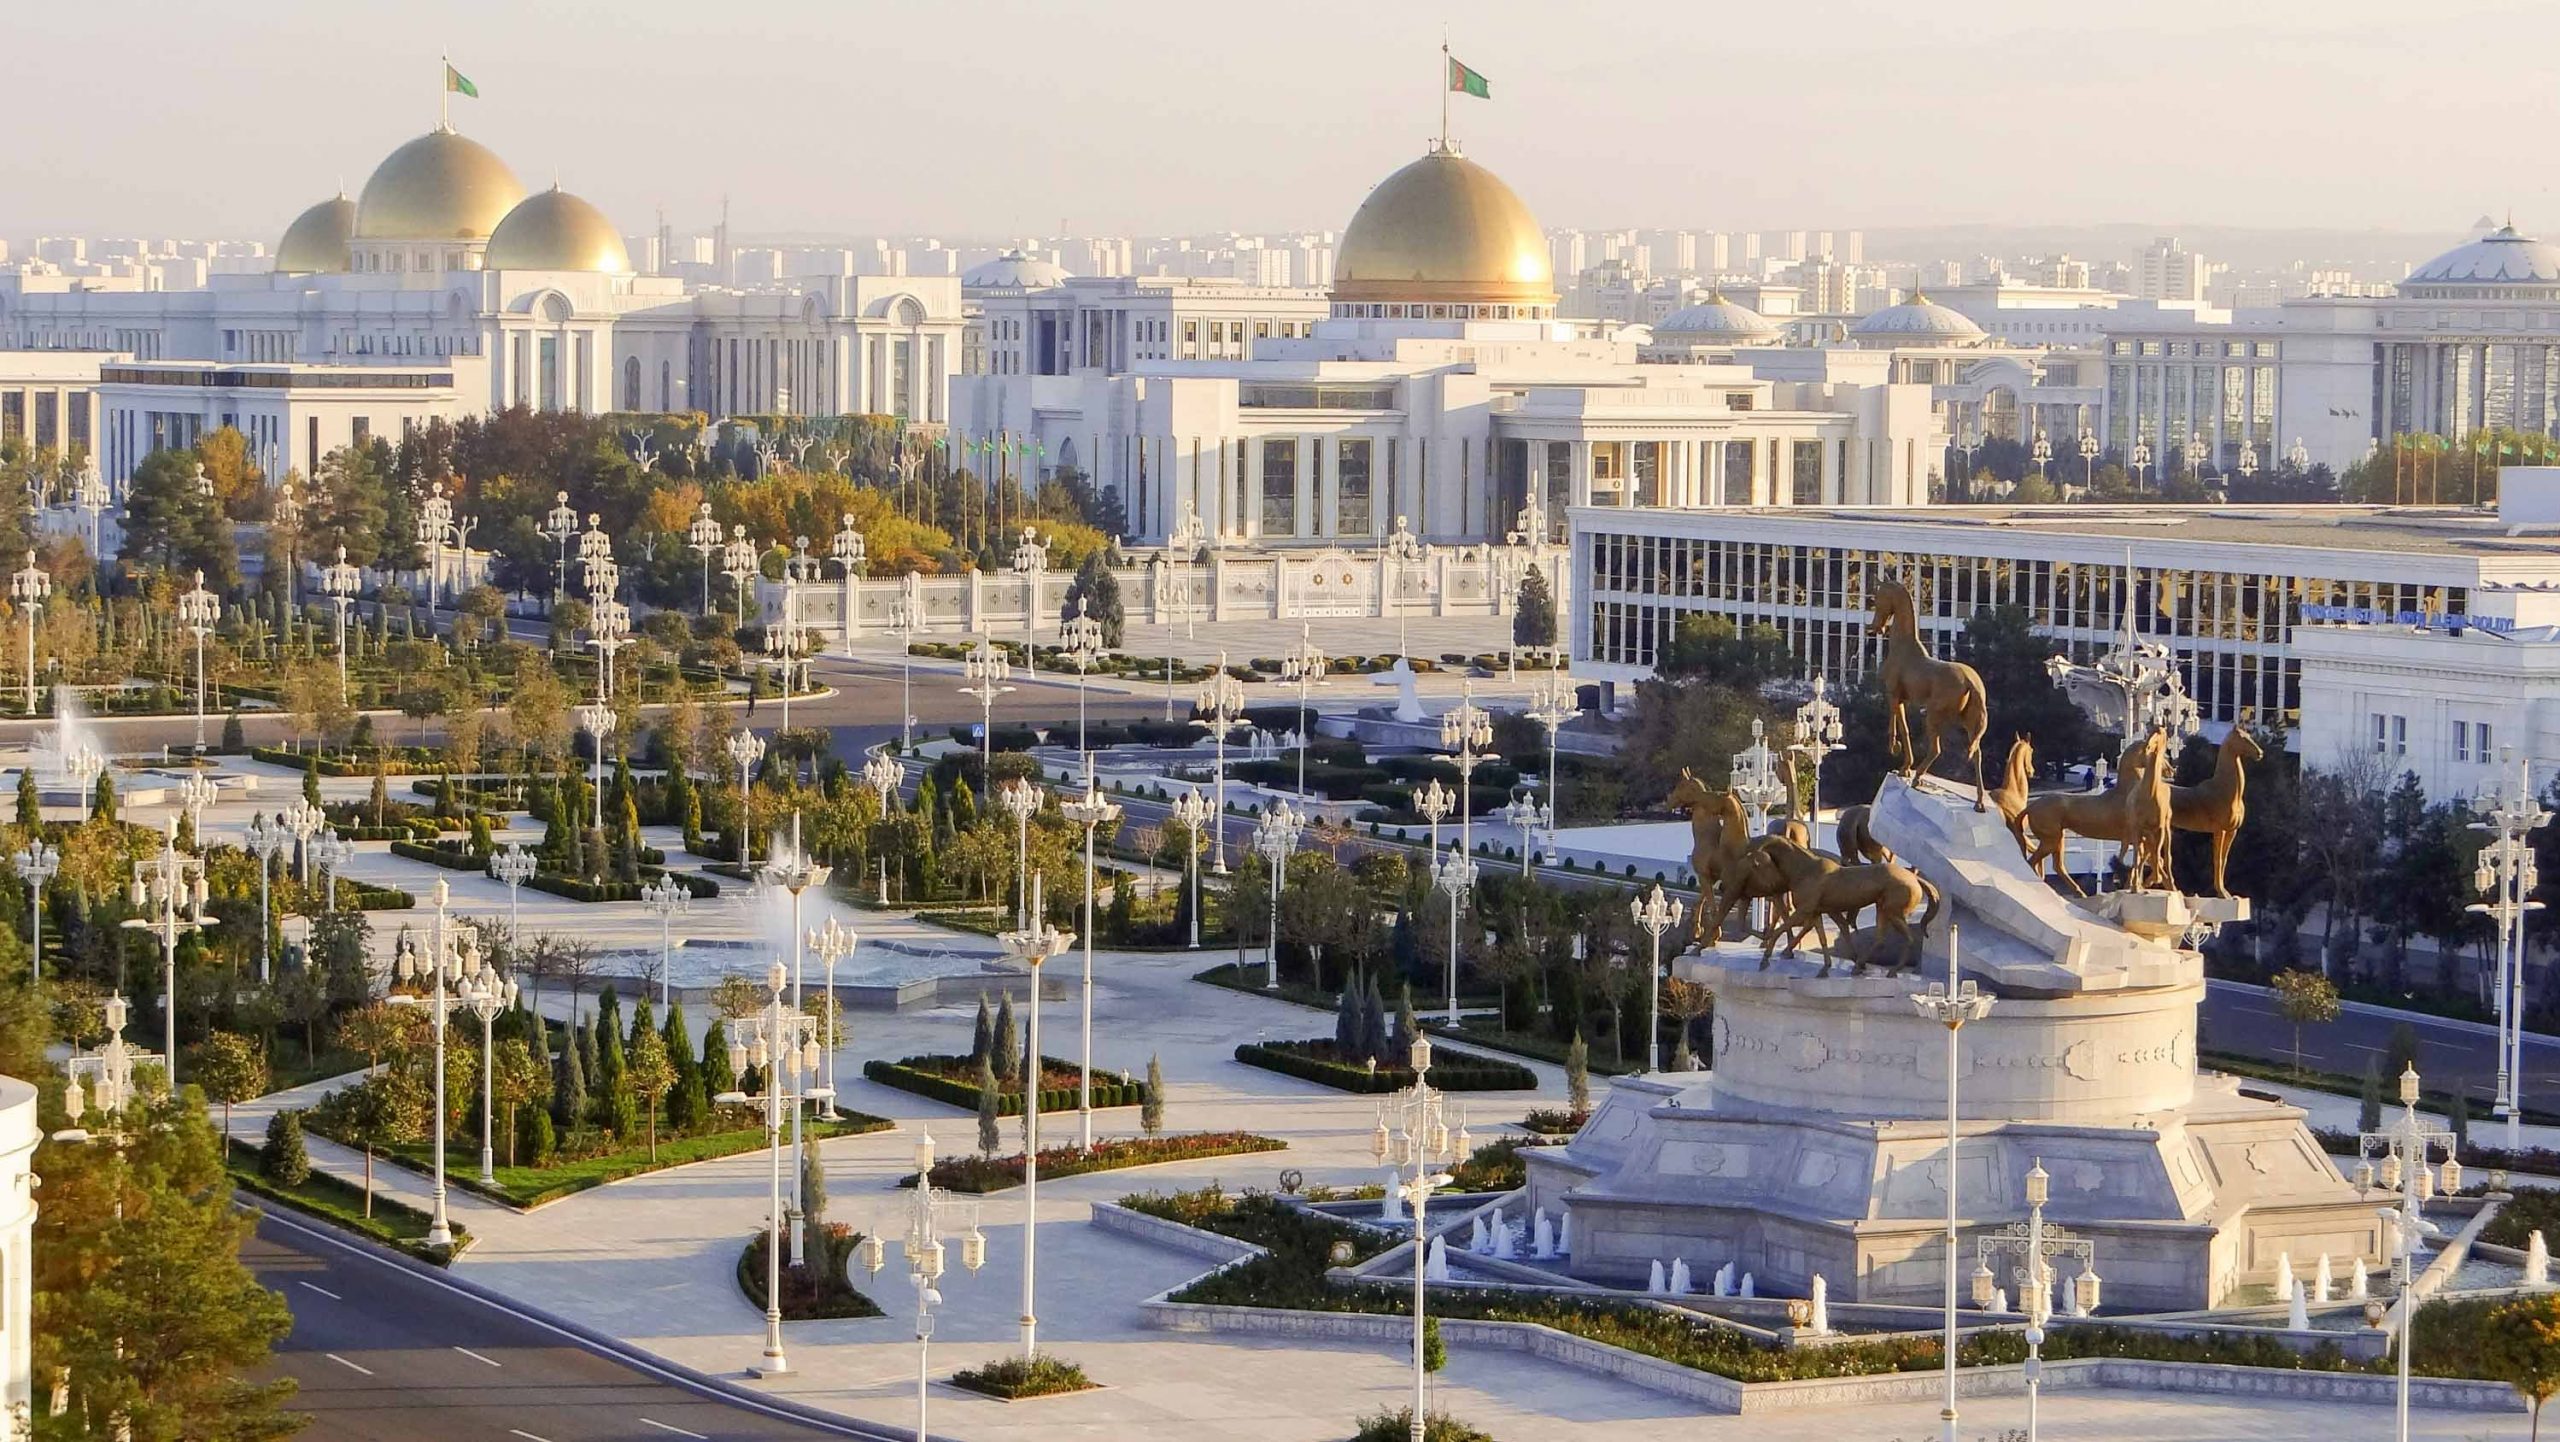 should i visit turkmenistan